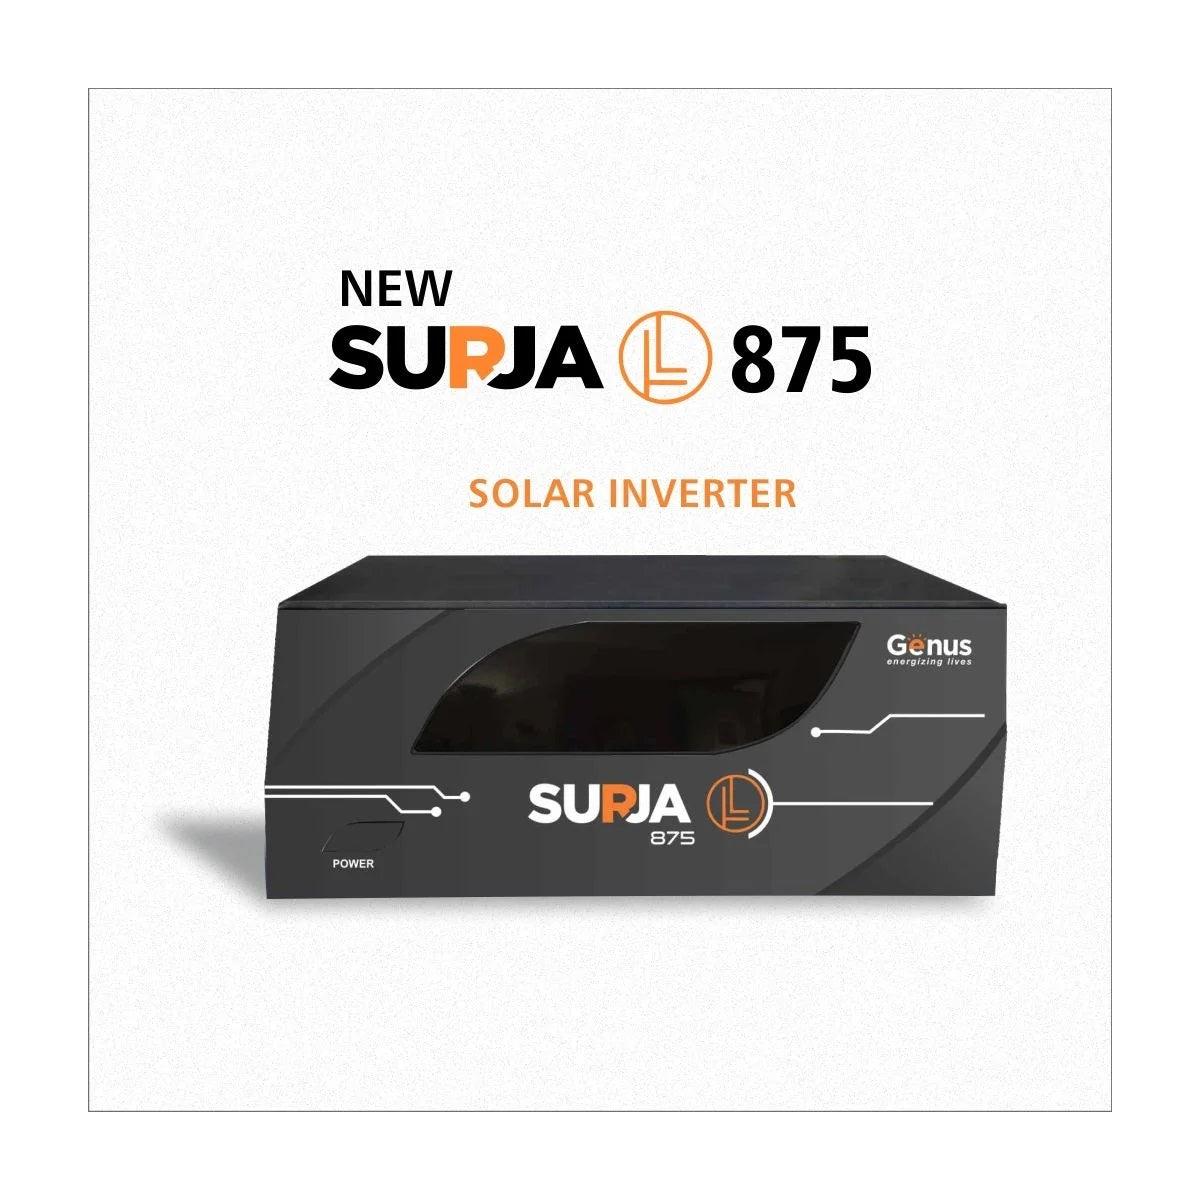 Genus Surja L 875 12V Sine Wave Solar Inverter UPS Best For Home